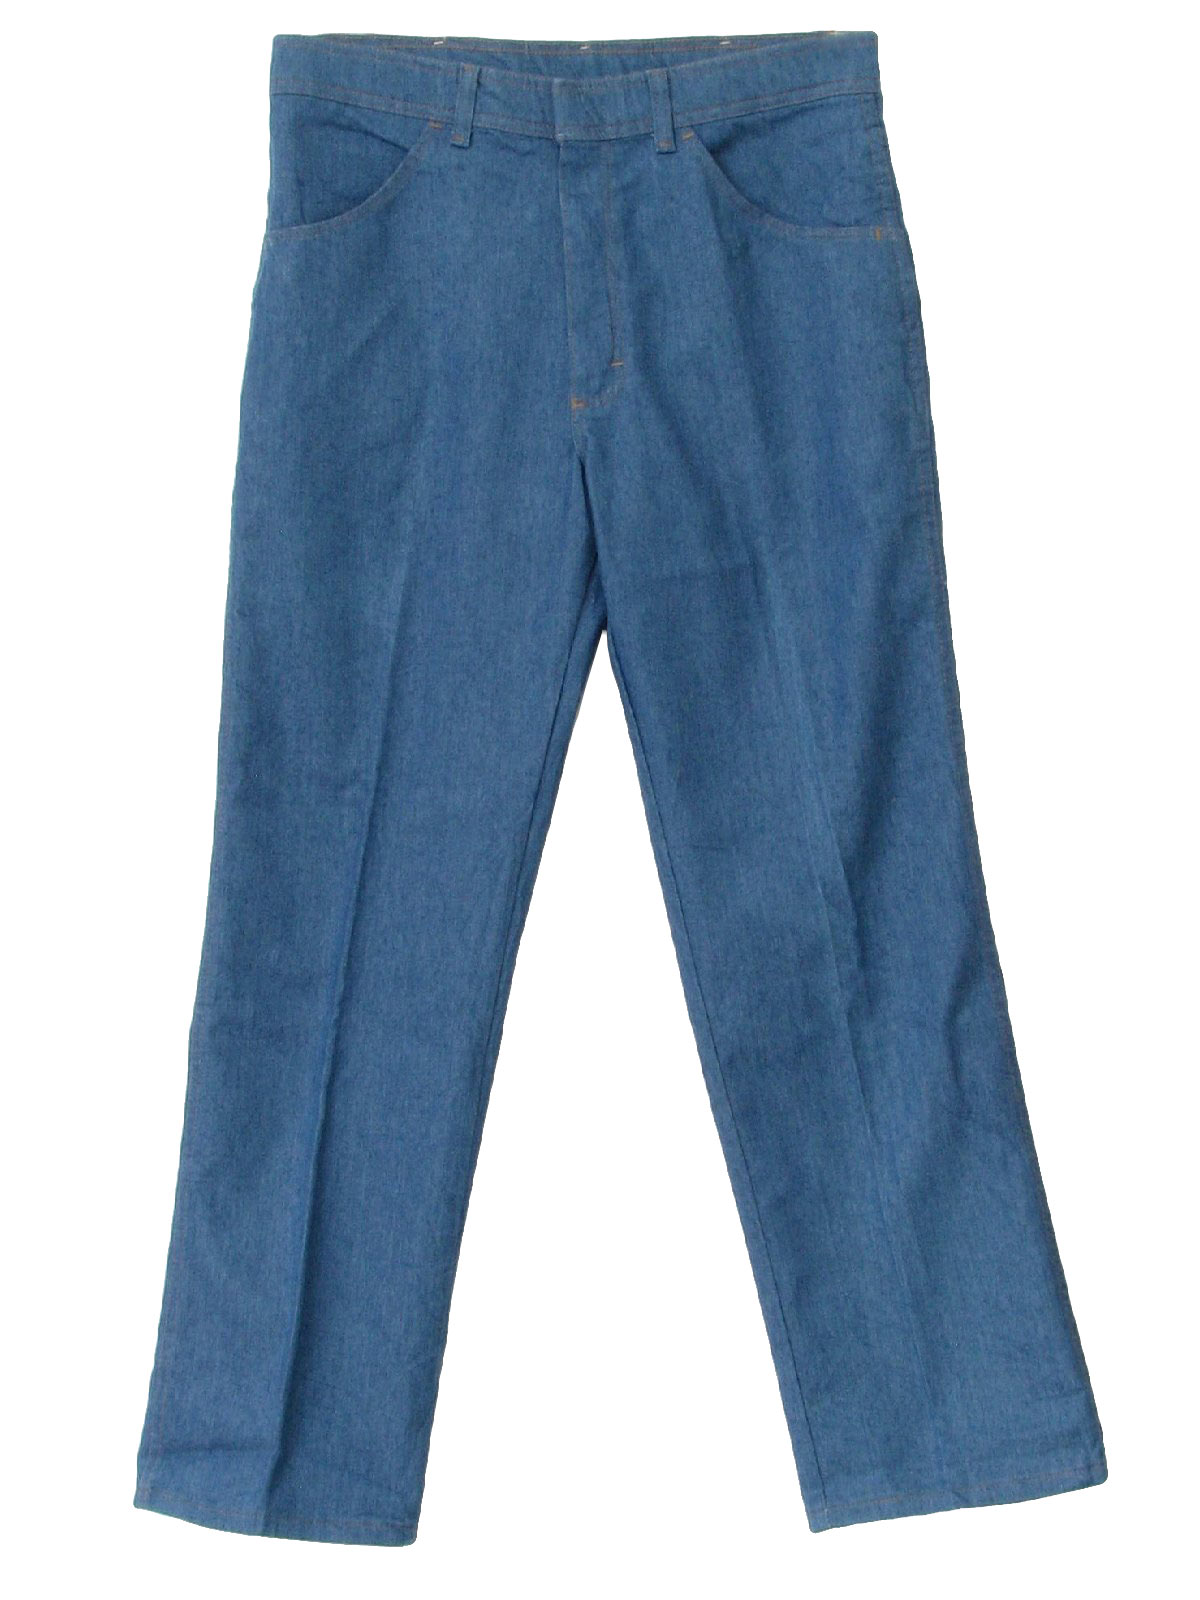 80s Retro Pants: Early80s -Wrangler- Mens blue denim straight leg ...